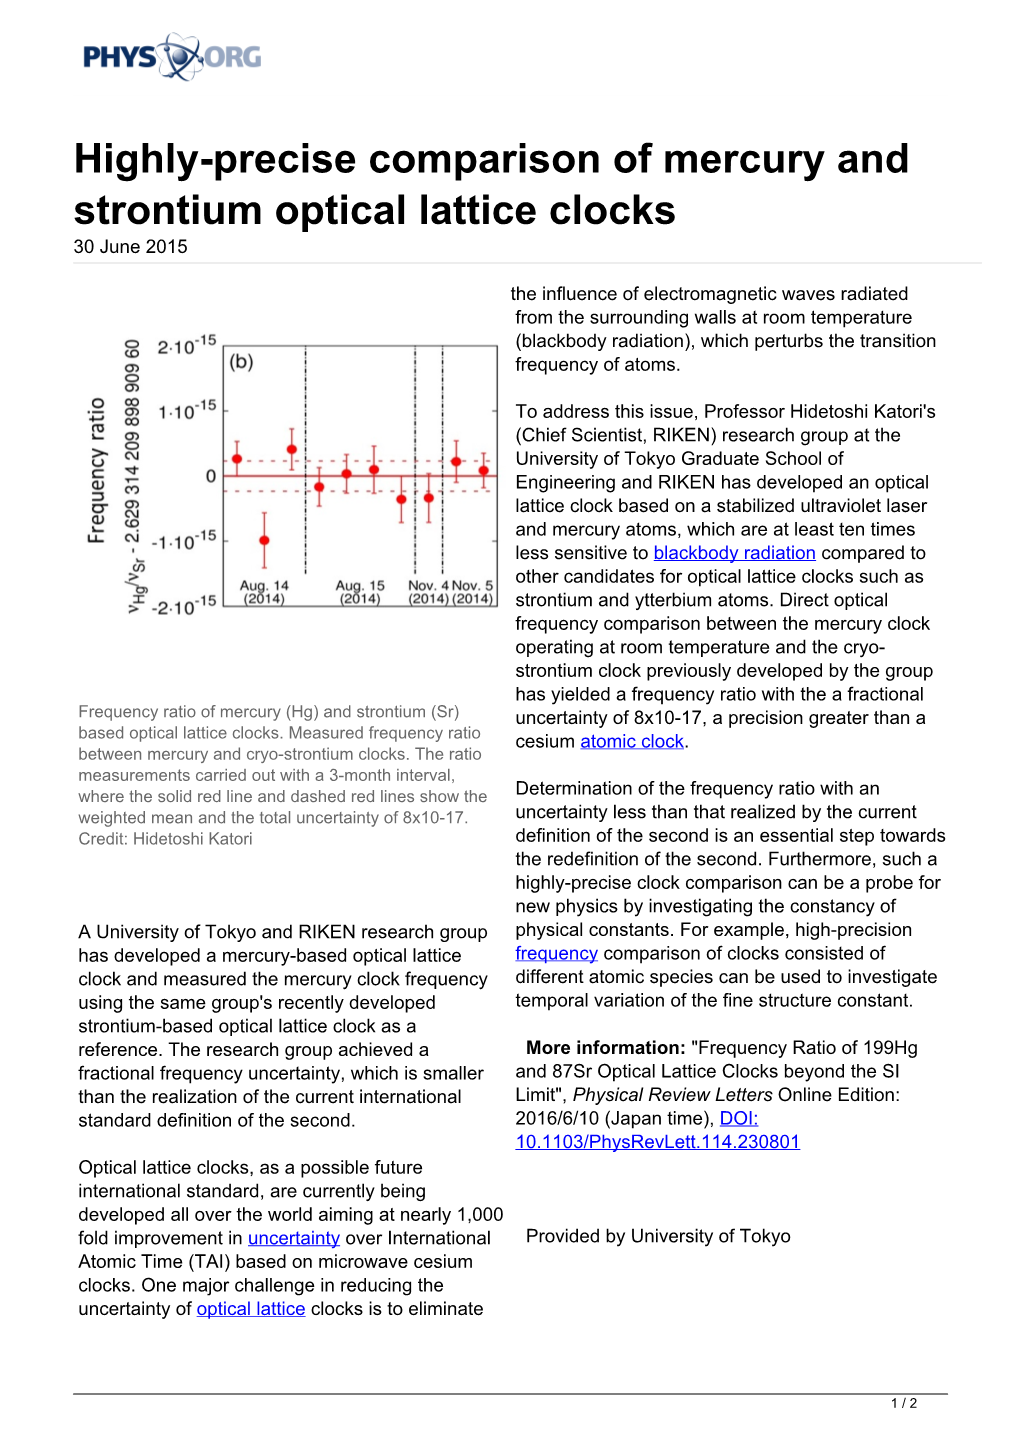 Highly-Precise Comparison of Mercury and Strontium Optical Lattice Clocks 30 June 2015